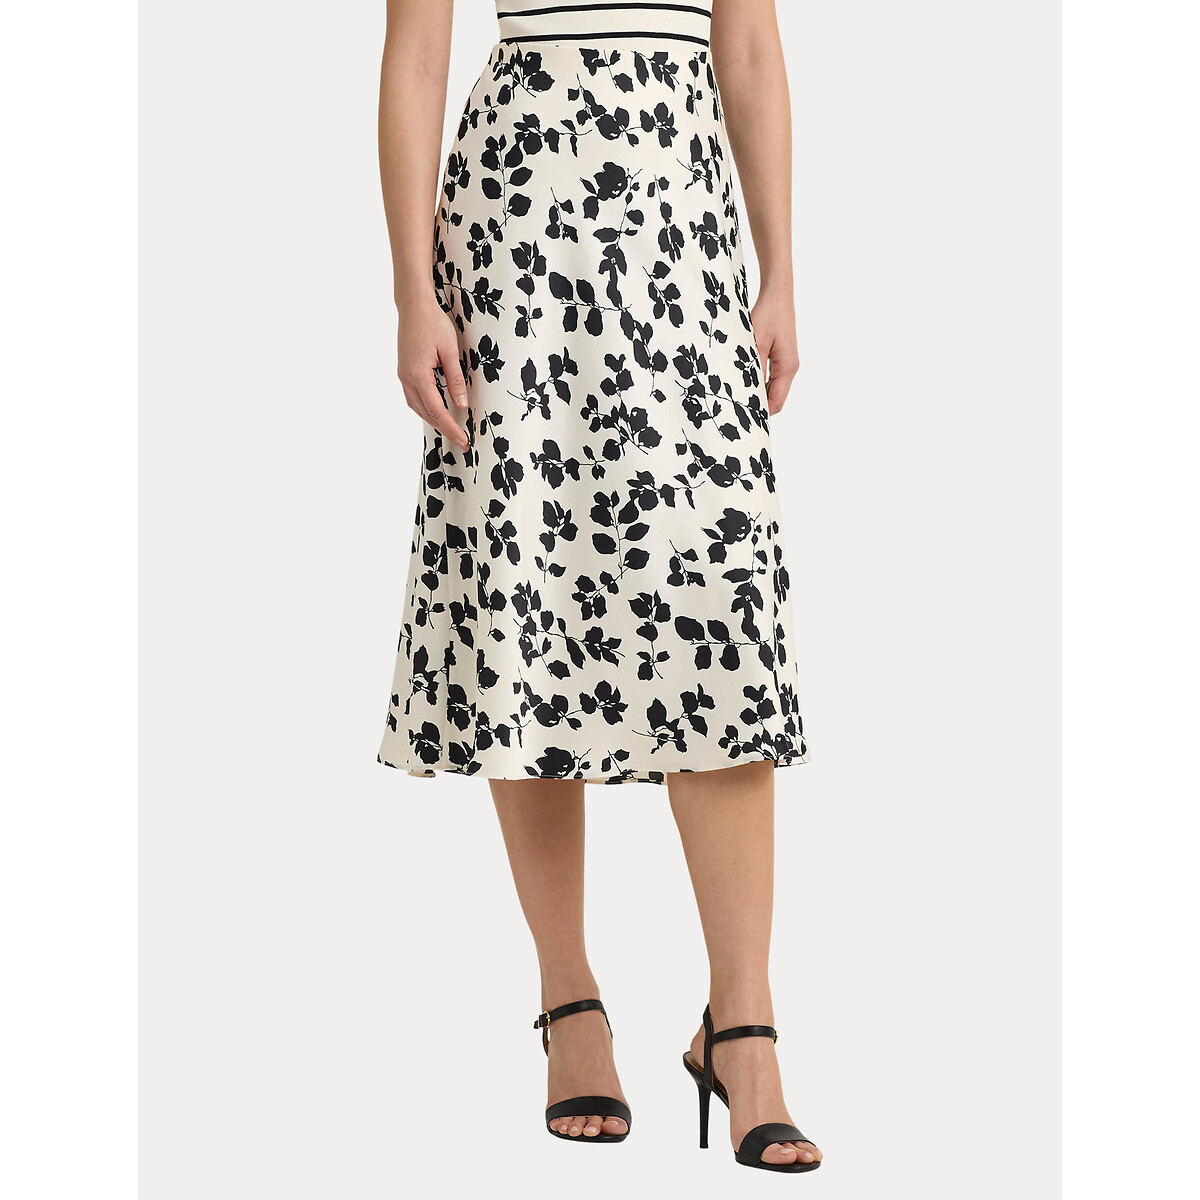 Sharae Floral Midi Skirt with High Waist